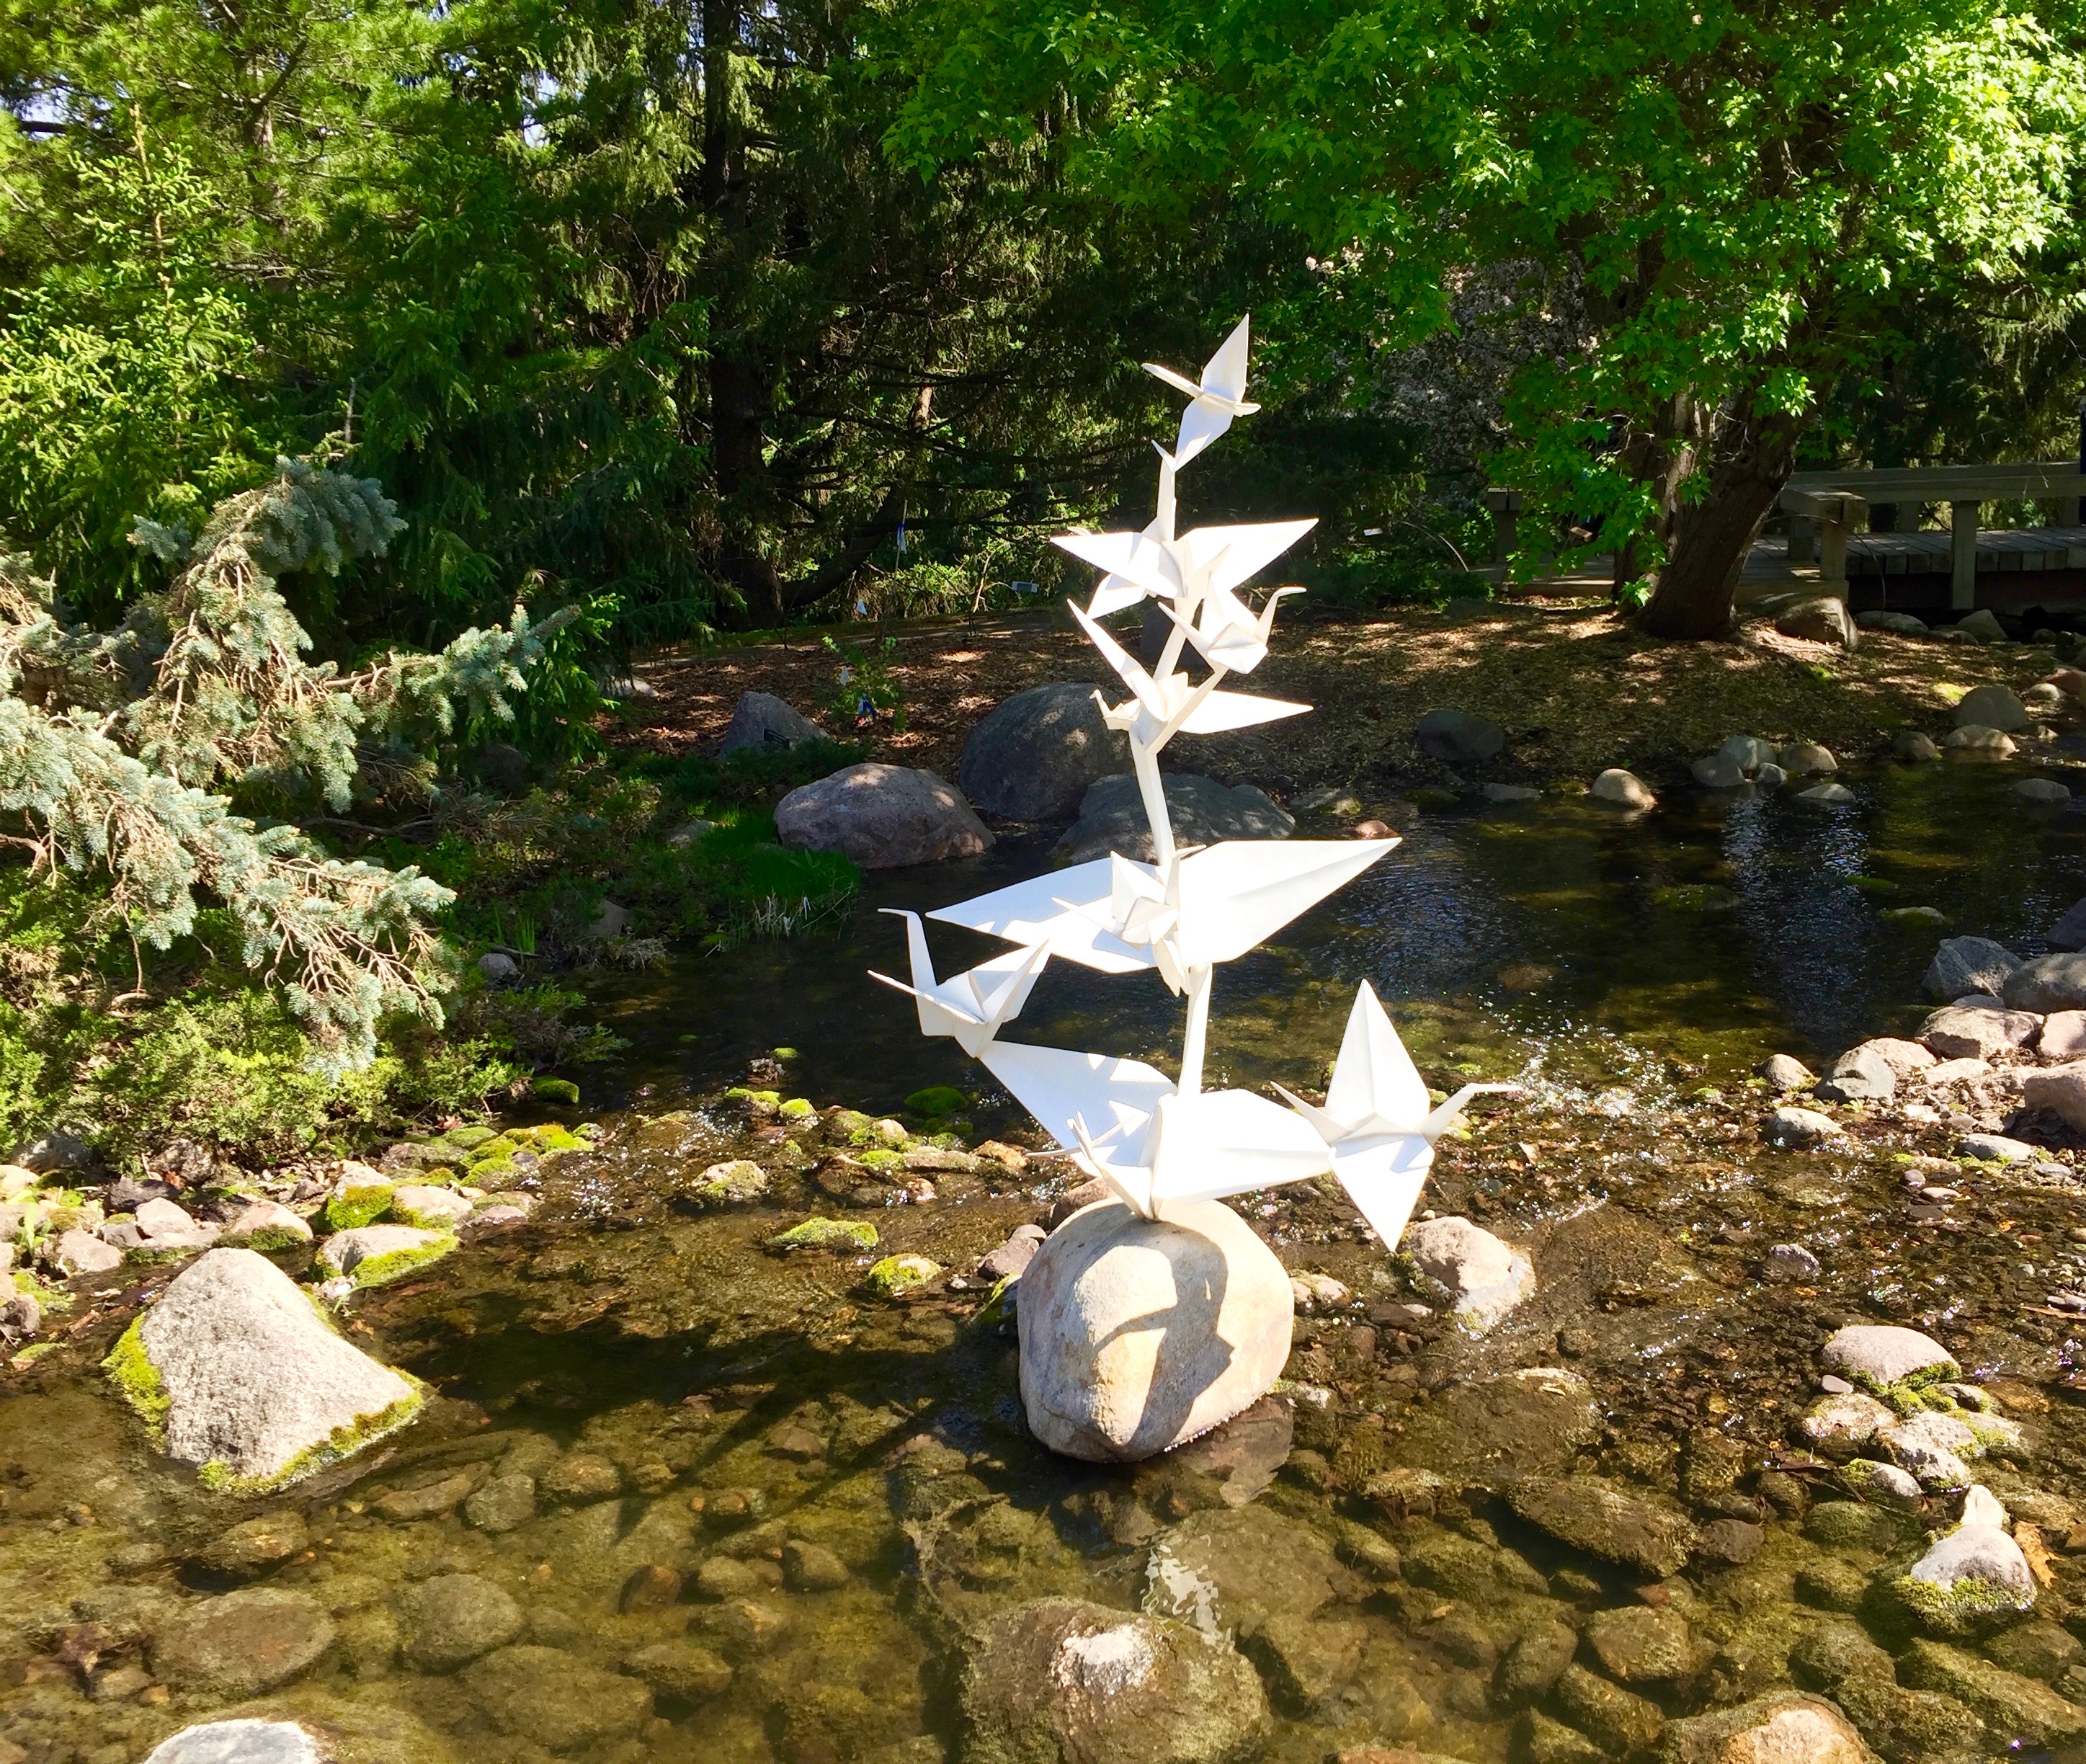 Origami in the Garden: Cranes